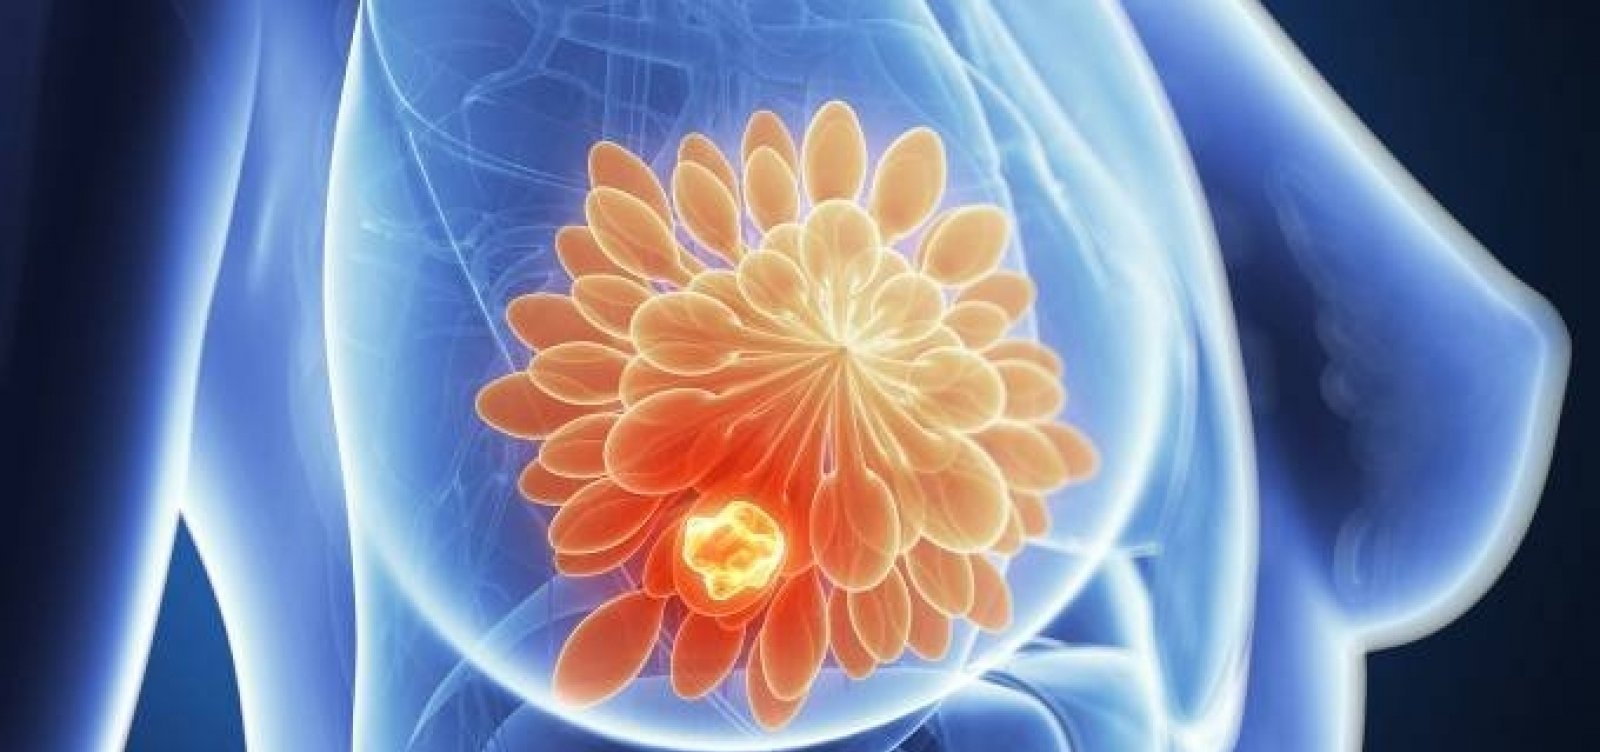 Anvisa aprova nova medicação para tratamento do câncer de mama